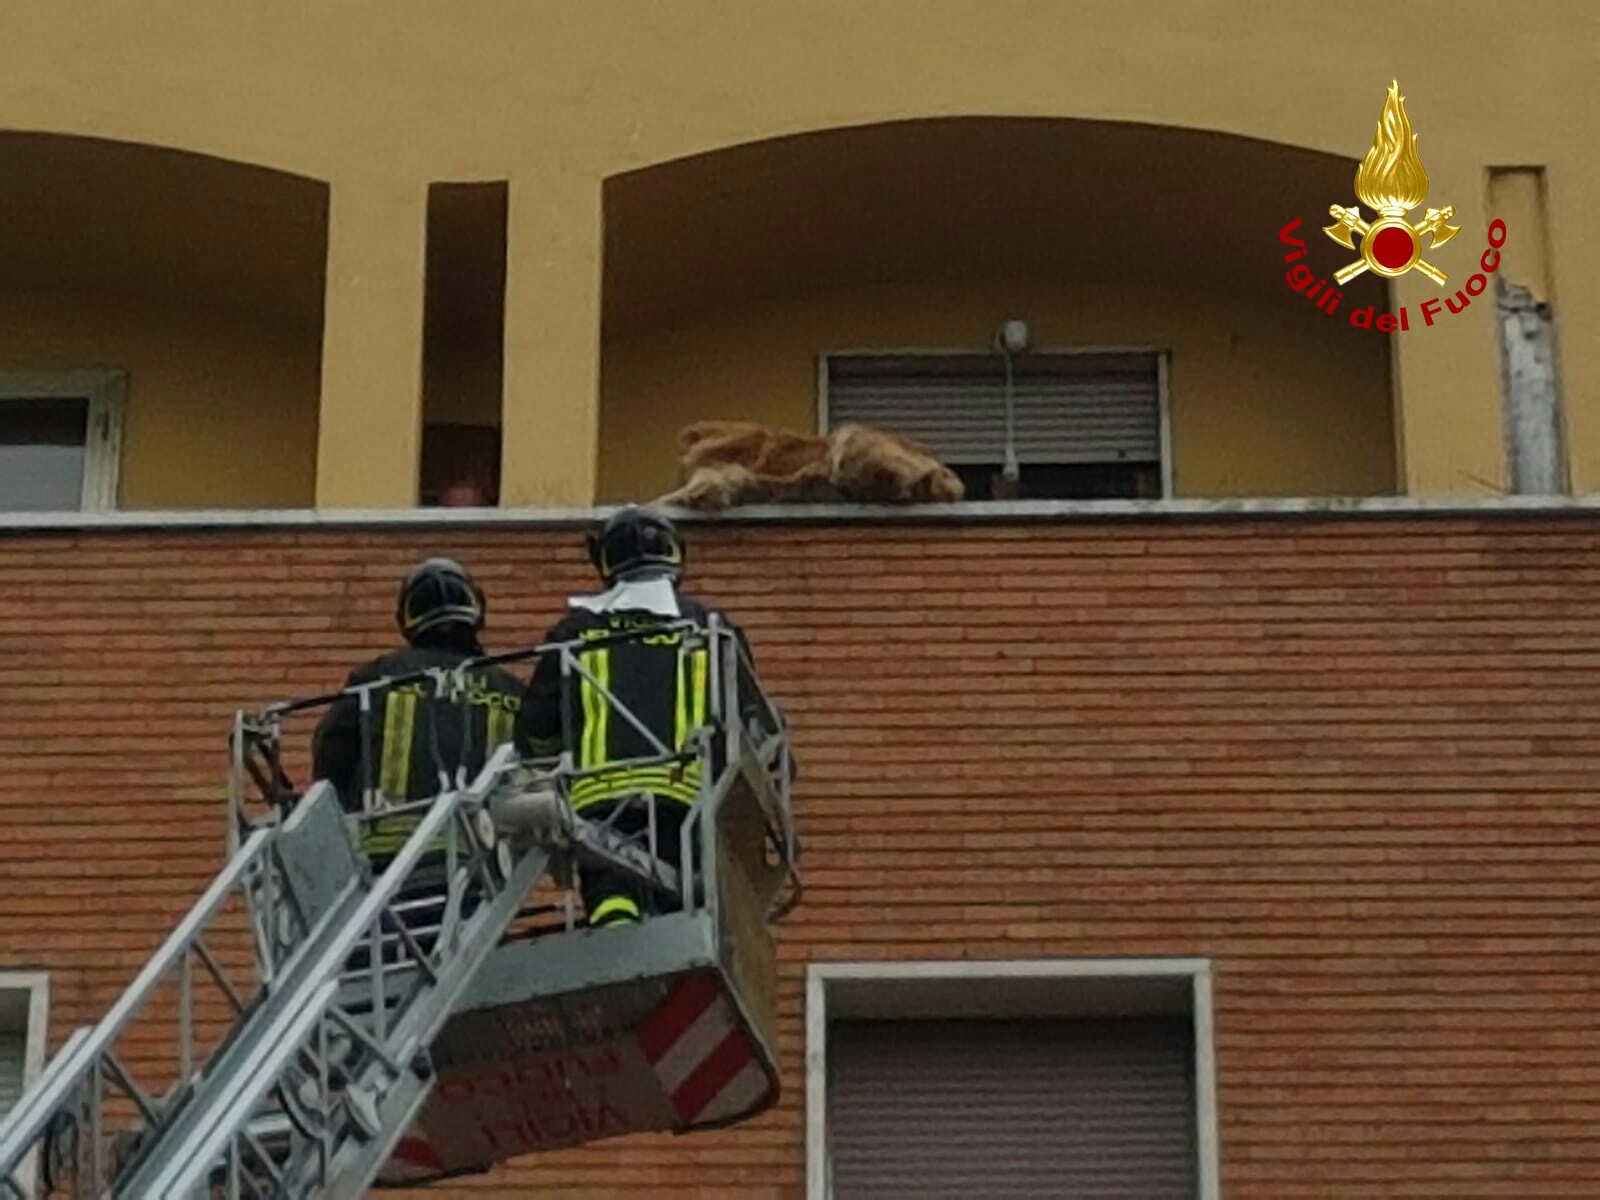 Immobilizzato sul parapetto di un balcone al 4° piano, cane salvato dai pompieri